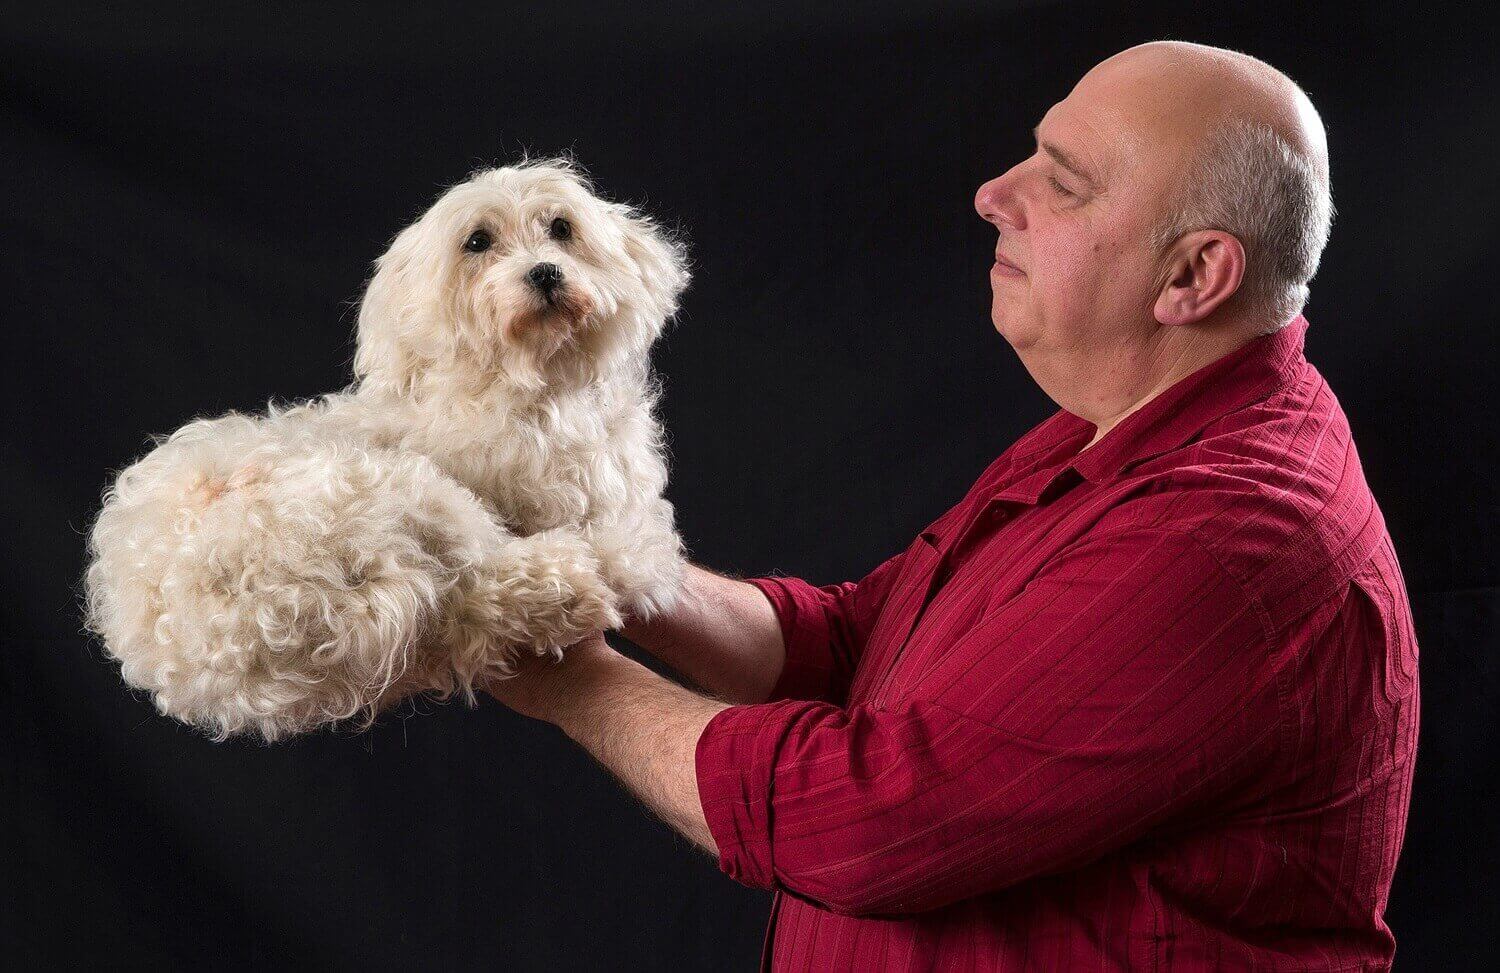 Патрик Пендвилль позирует с чучелом собаки в мастерской таксидермиста.